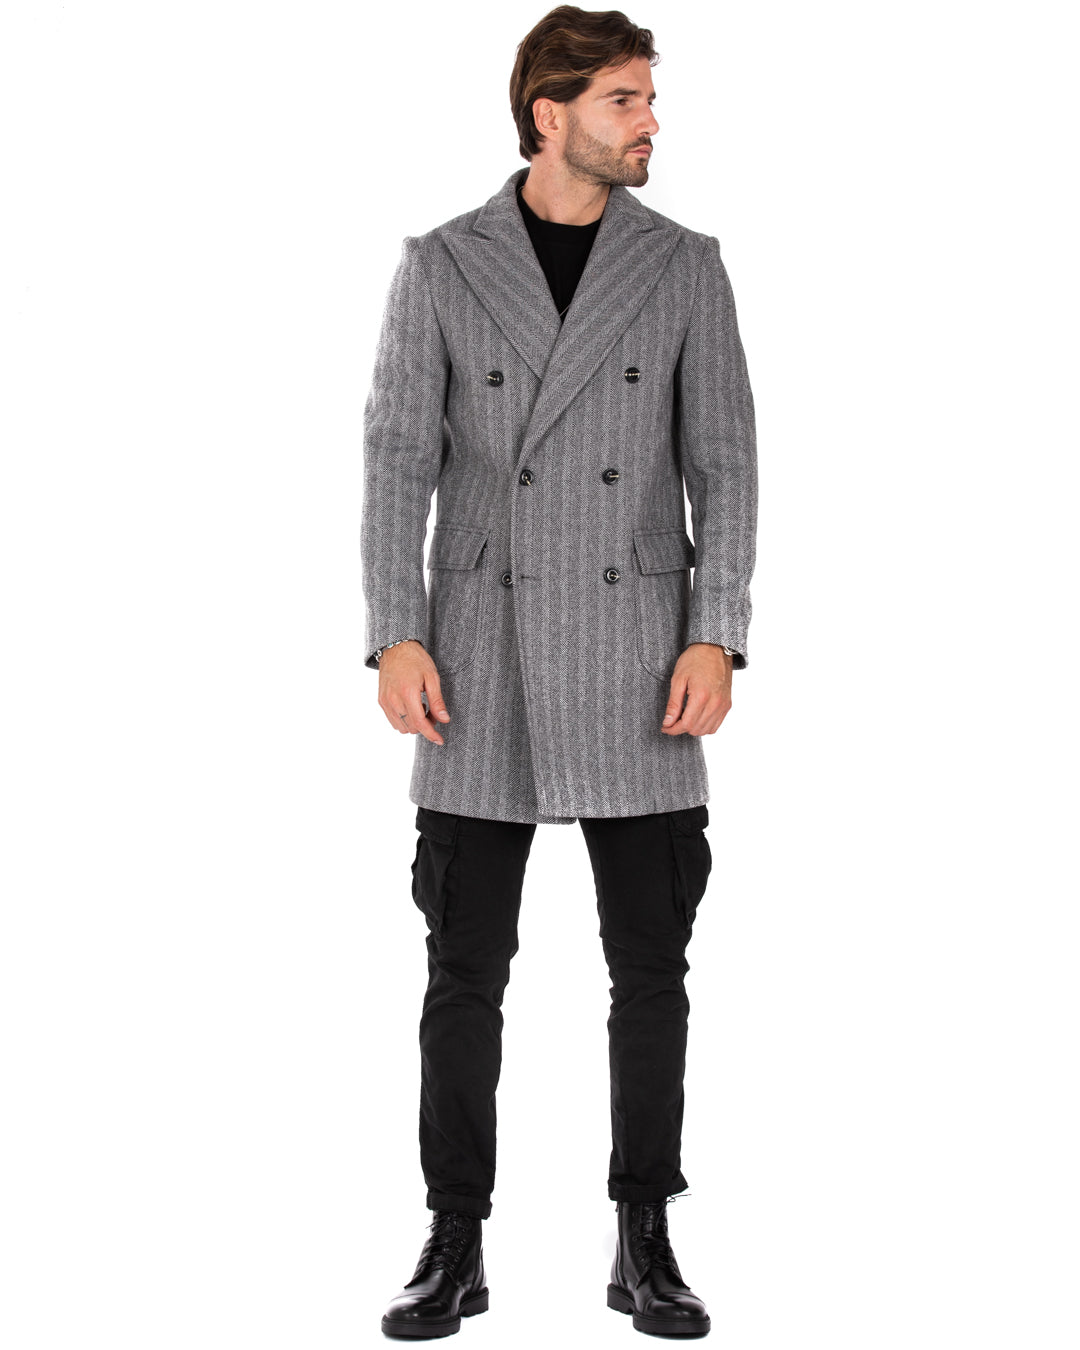 Charles - cappotto doppiopetto spigato grigio e nero